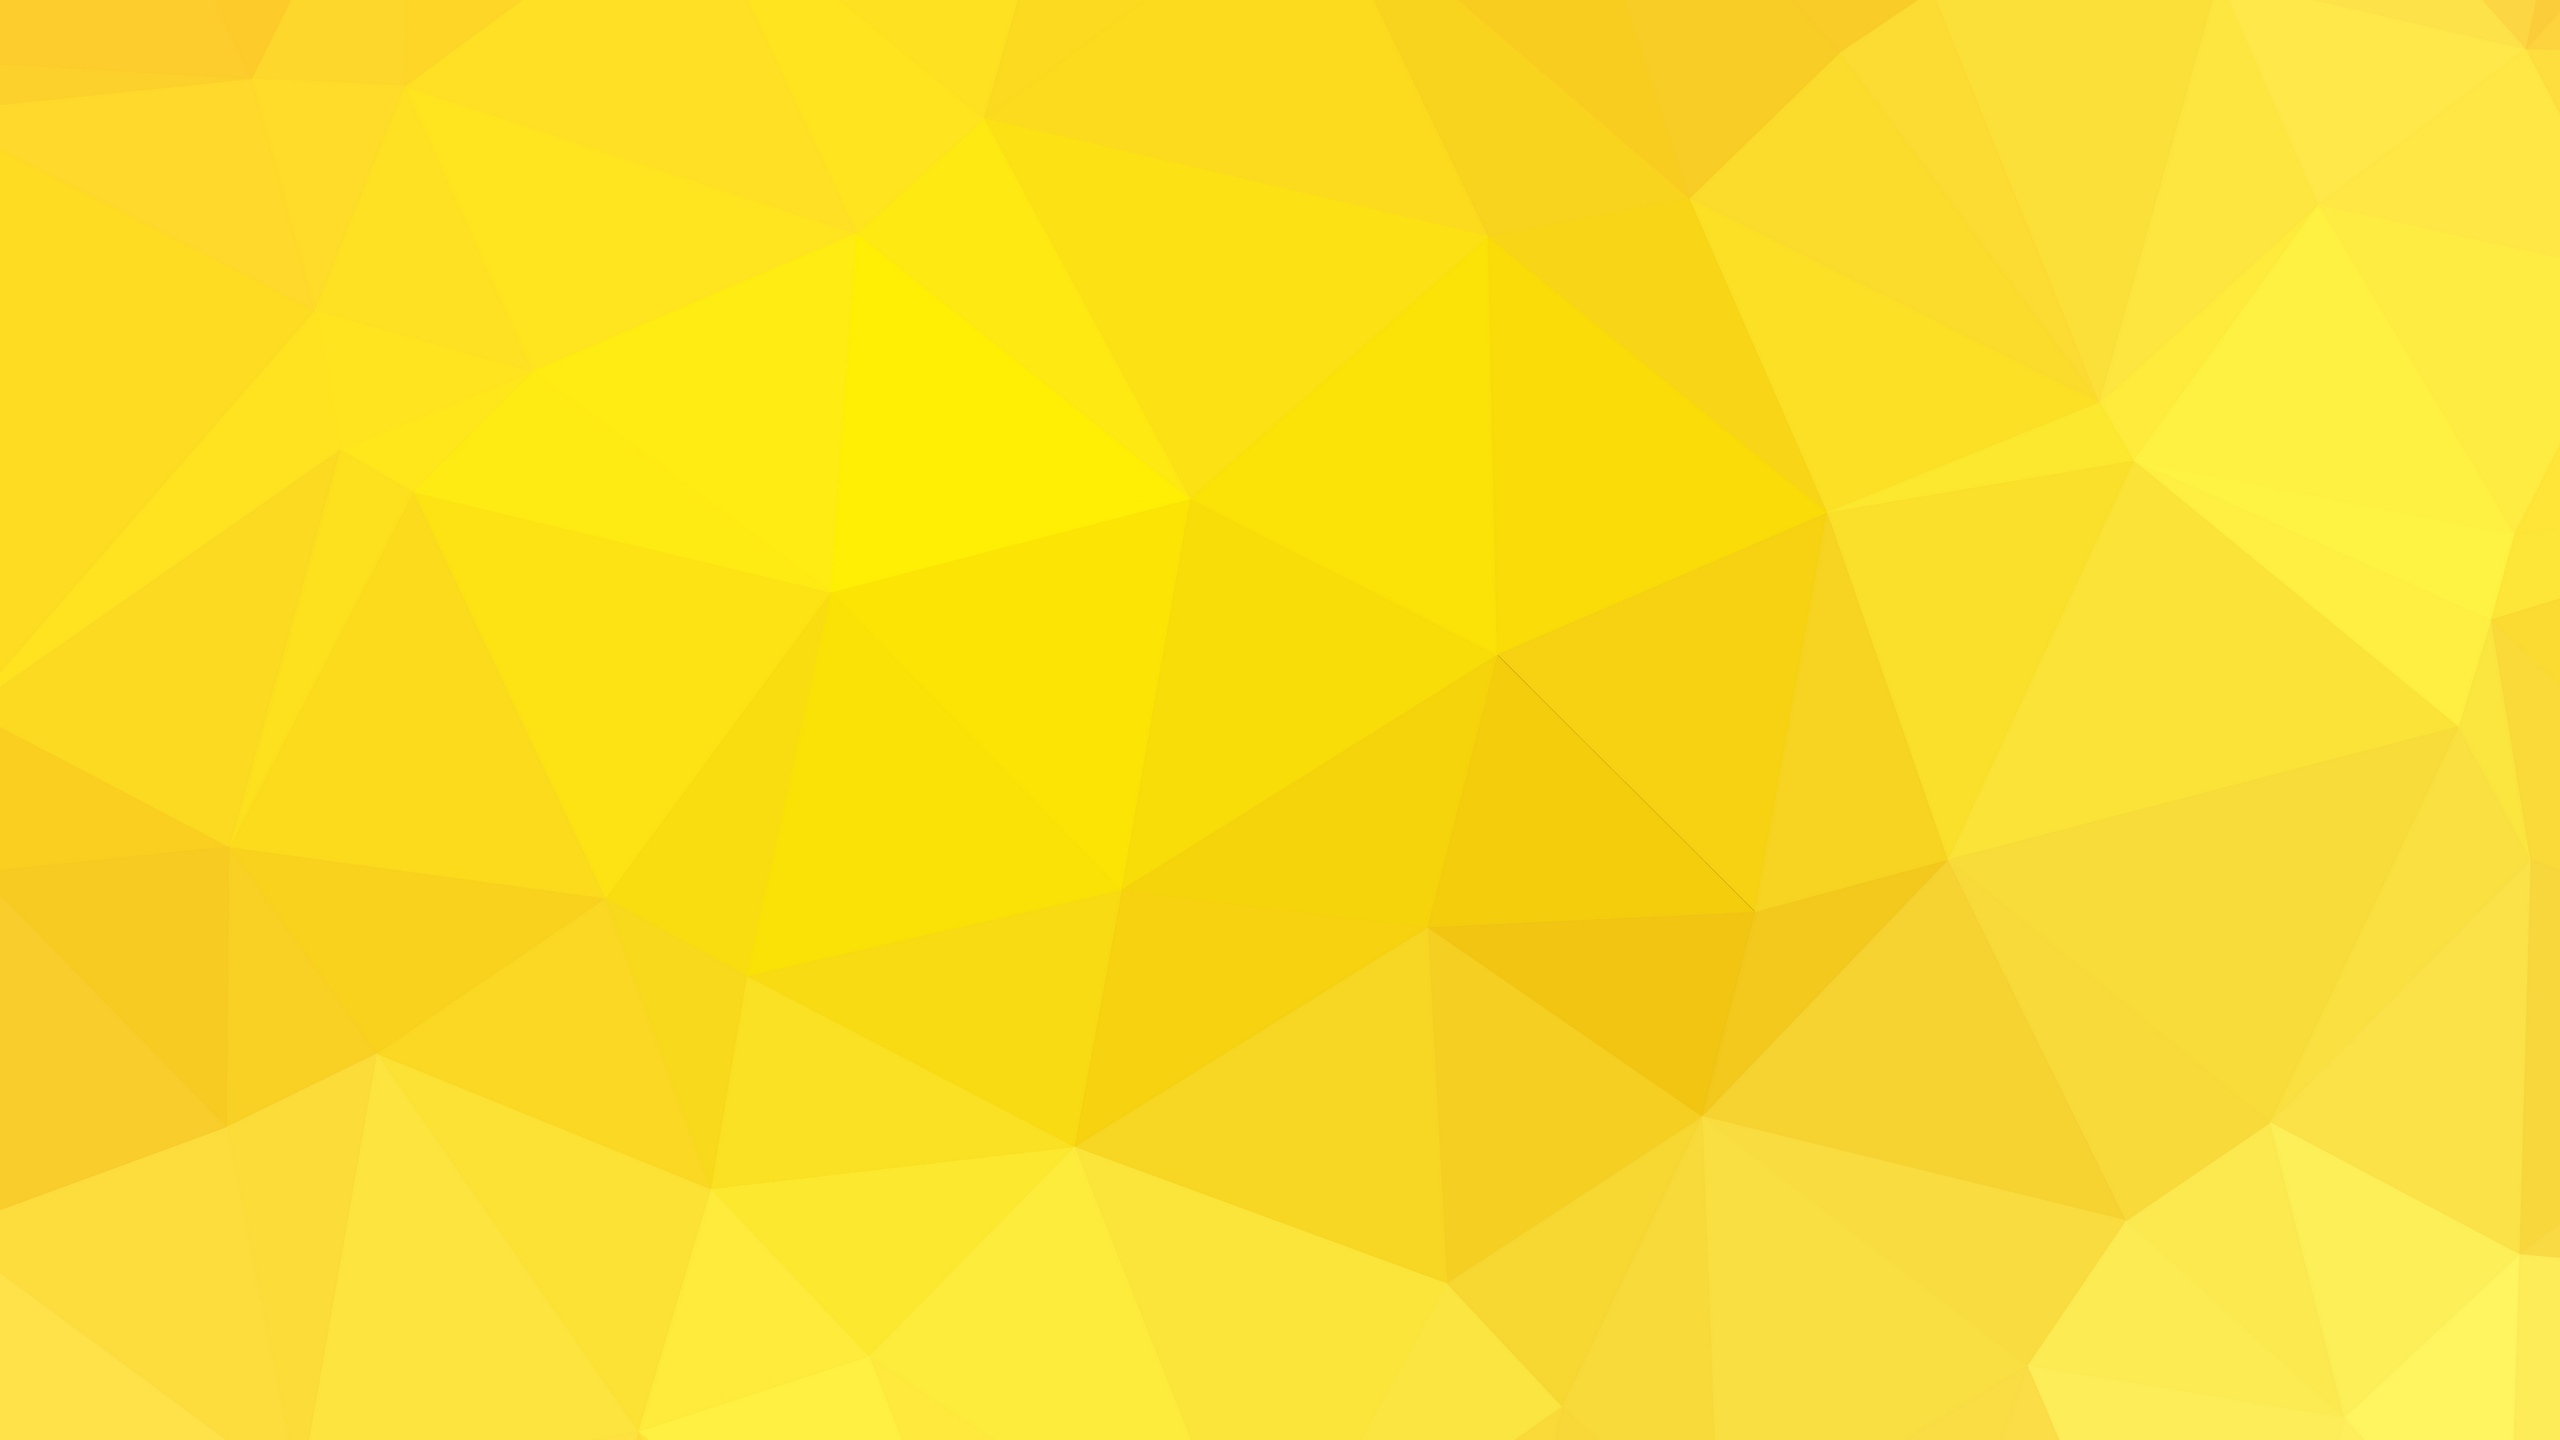 Thiết kế logo với màu vàng không bao giờ lỗi thời và luôn làm nổi bật thương hiệu. 27 ý tưởng thiết kế logo màu vàng từ Gudlogo giúp bạn nhanh chóng xác định được phong cách thiết kế riêng của mình. Hãy tham khảo ngay và tạo ra logo độc đáo của riêng bạn.